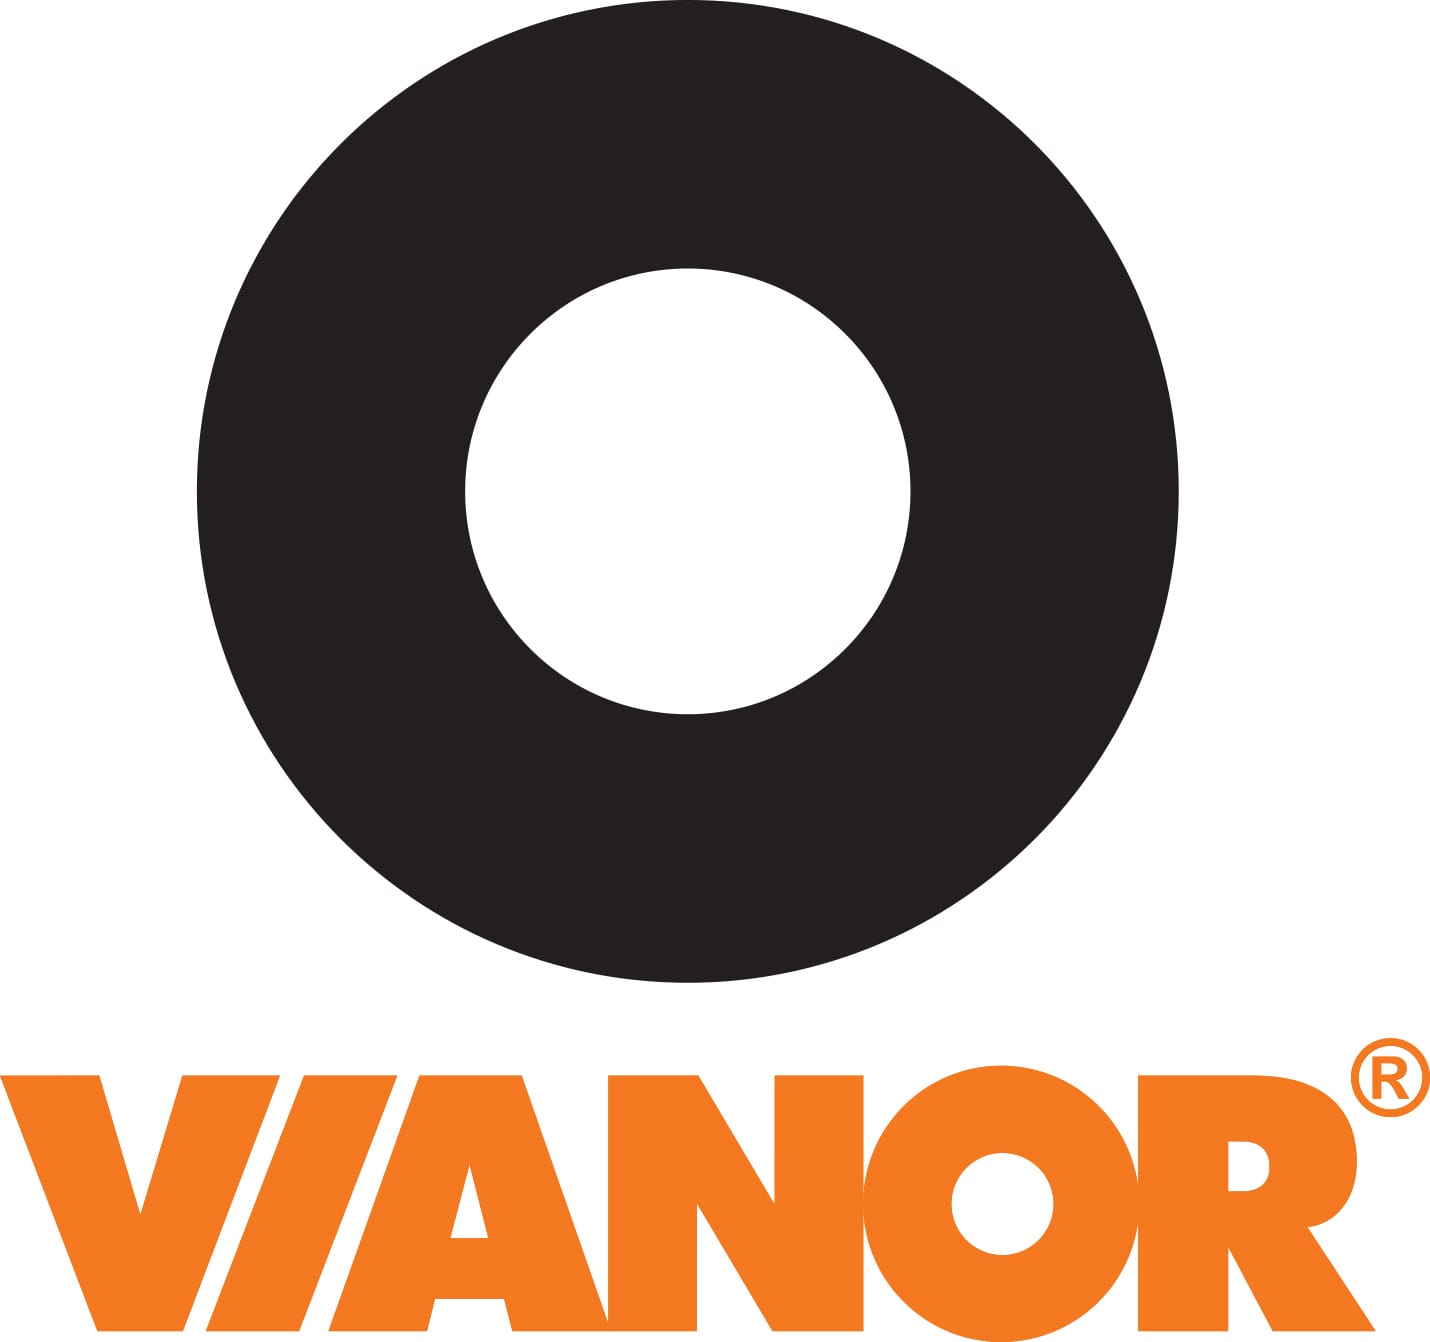 Vianor logo jossa rengas yläpuolella, teksti alapuolella